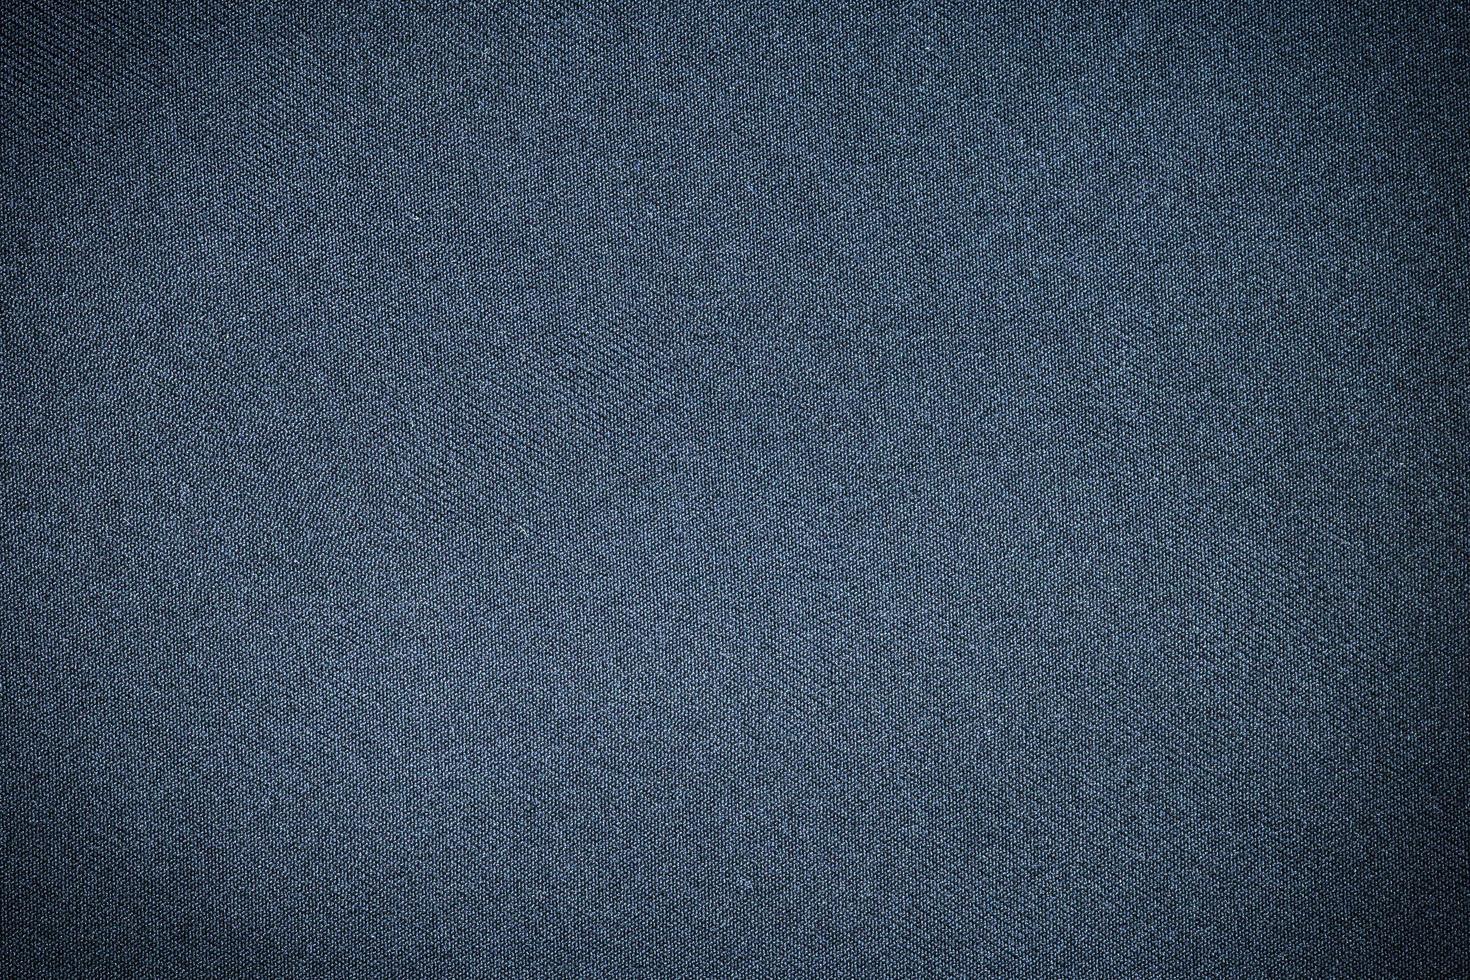 tecido azul escuro altamente detalhado foto